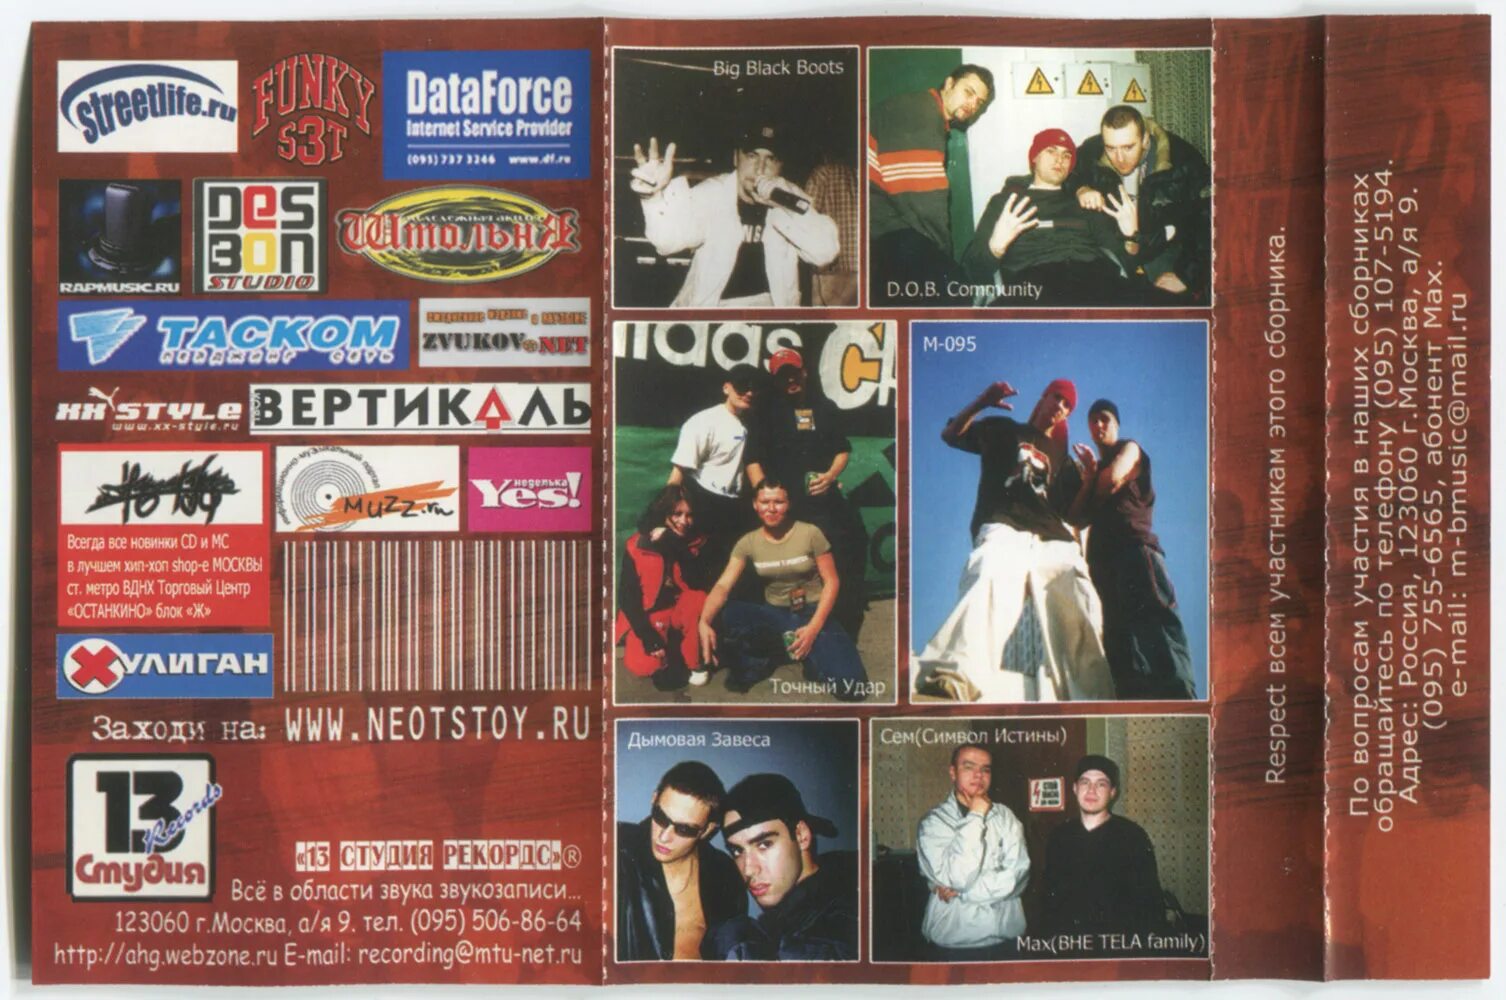 Группа сила слов. Сборник русского рэпа 2002. Rap сила сборник. Группа big Black Boots. Русский рэп 19 2002.